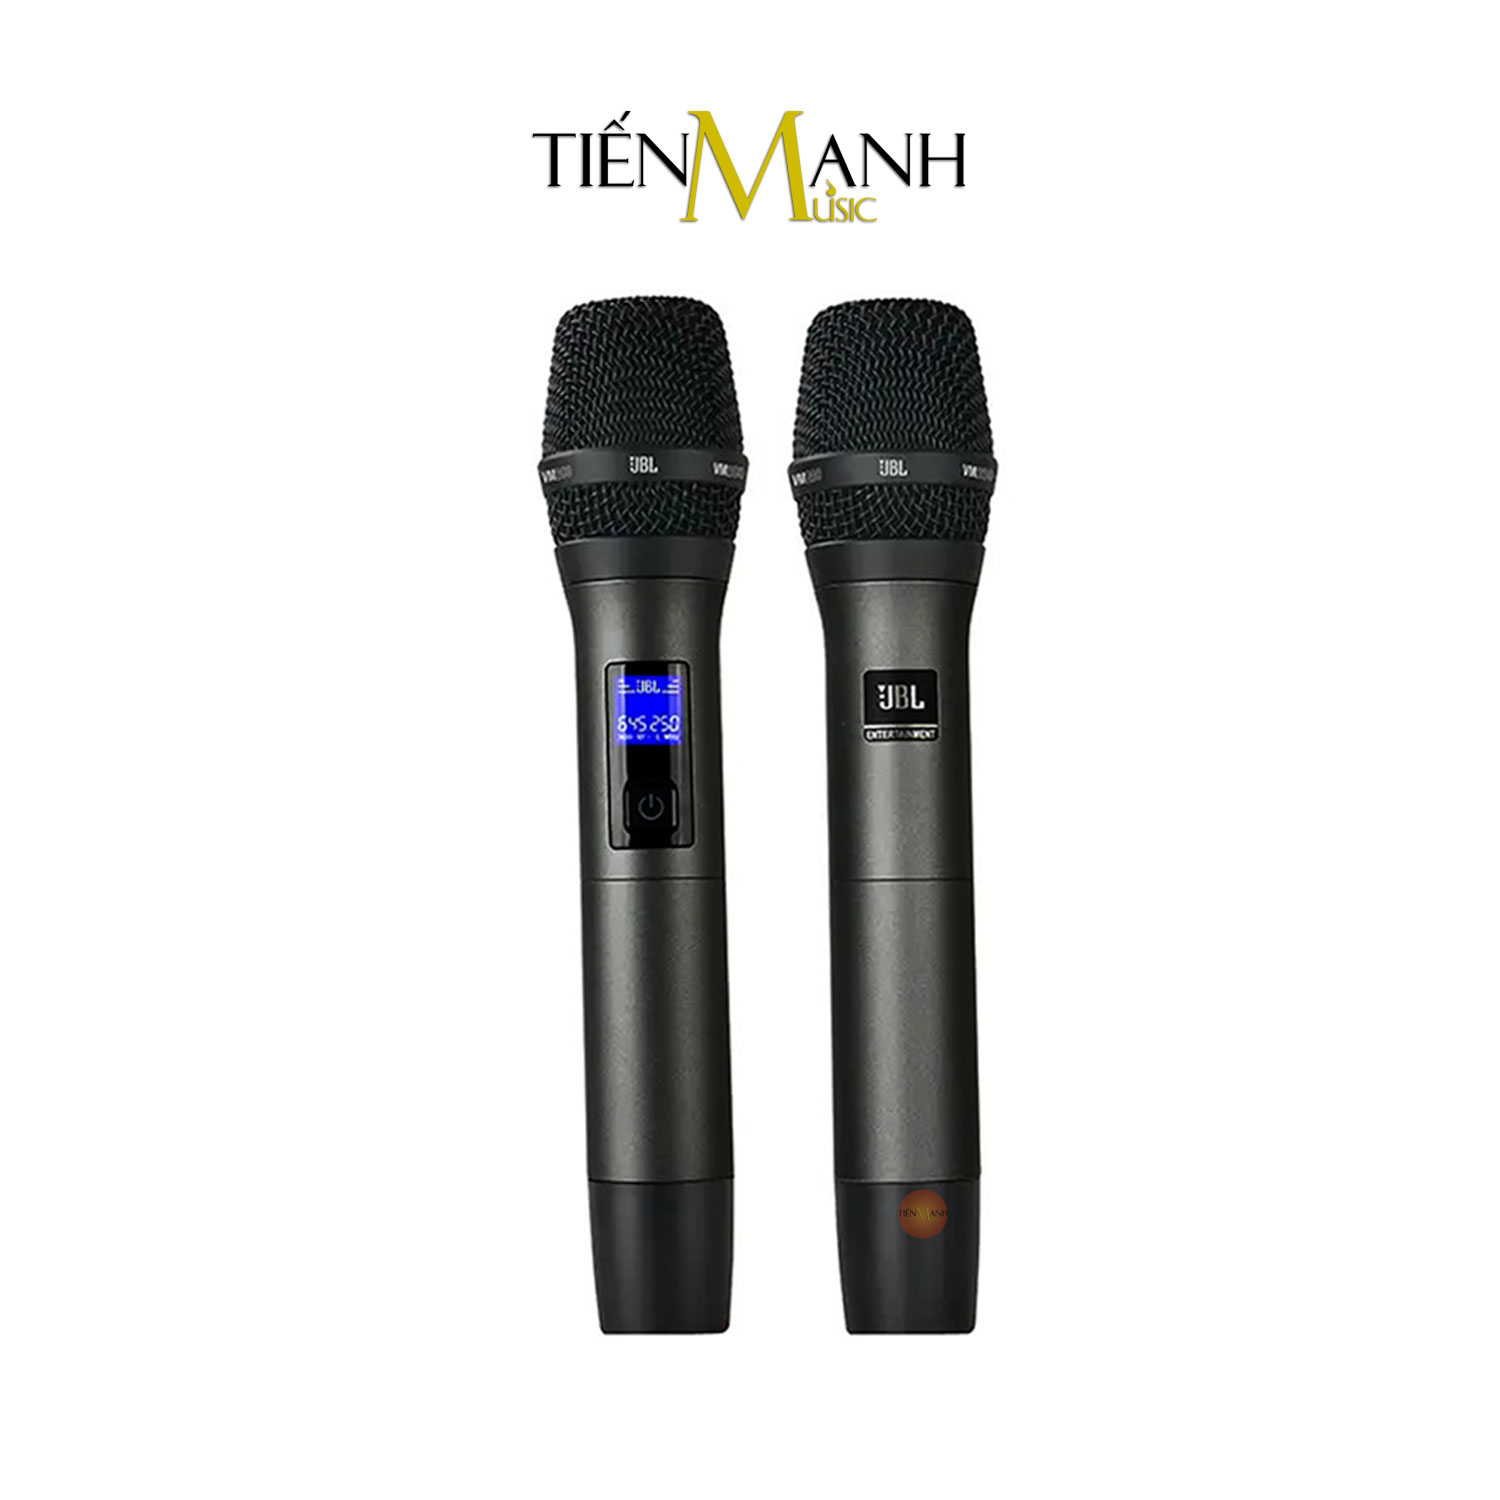 Bộ 2 Micro Không Dây JBL VM200 - Mic Cầm Tay Vocal Microphone Karaoke Wireless Hàng Chính Hãng - Kèm Móng Gẩy DreamMaker